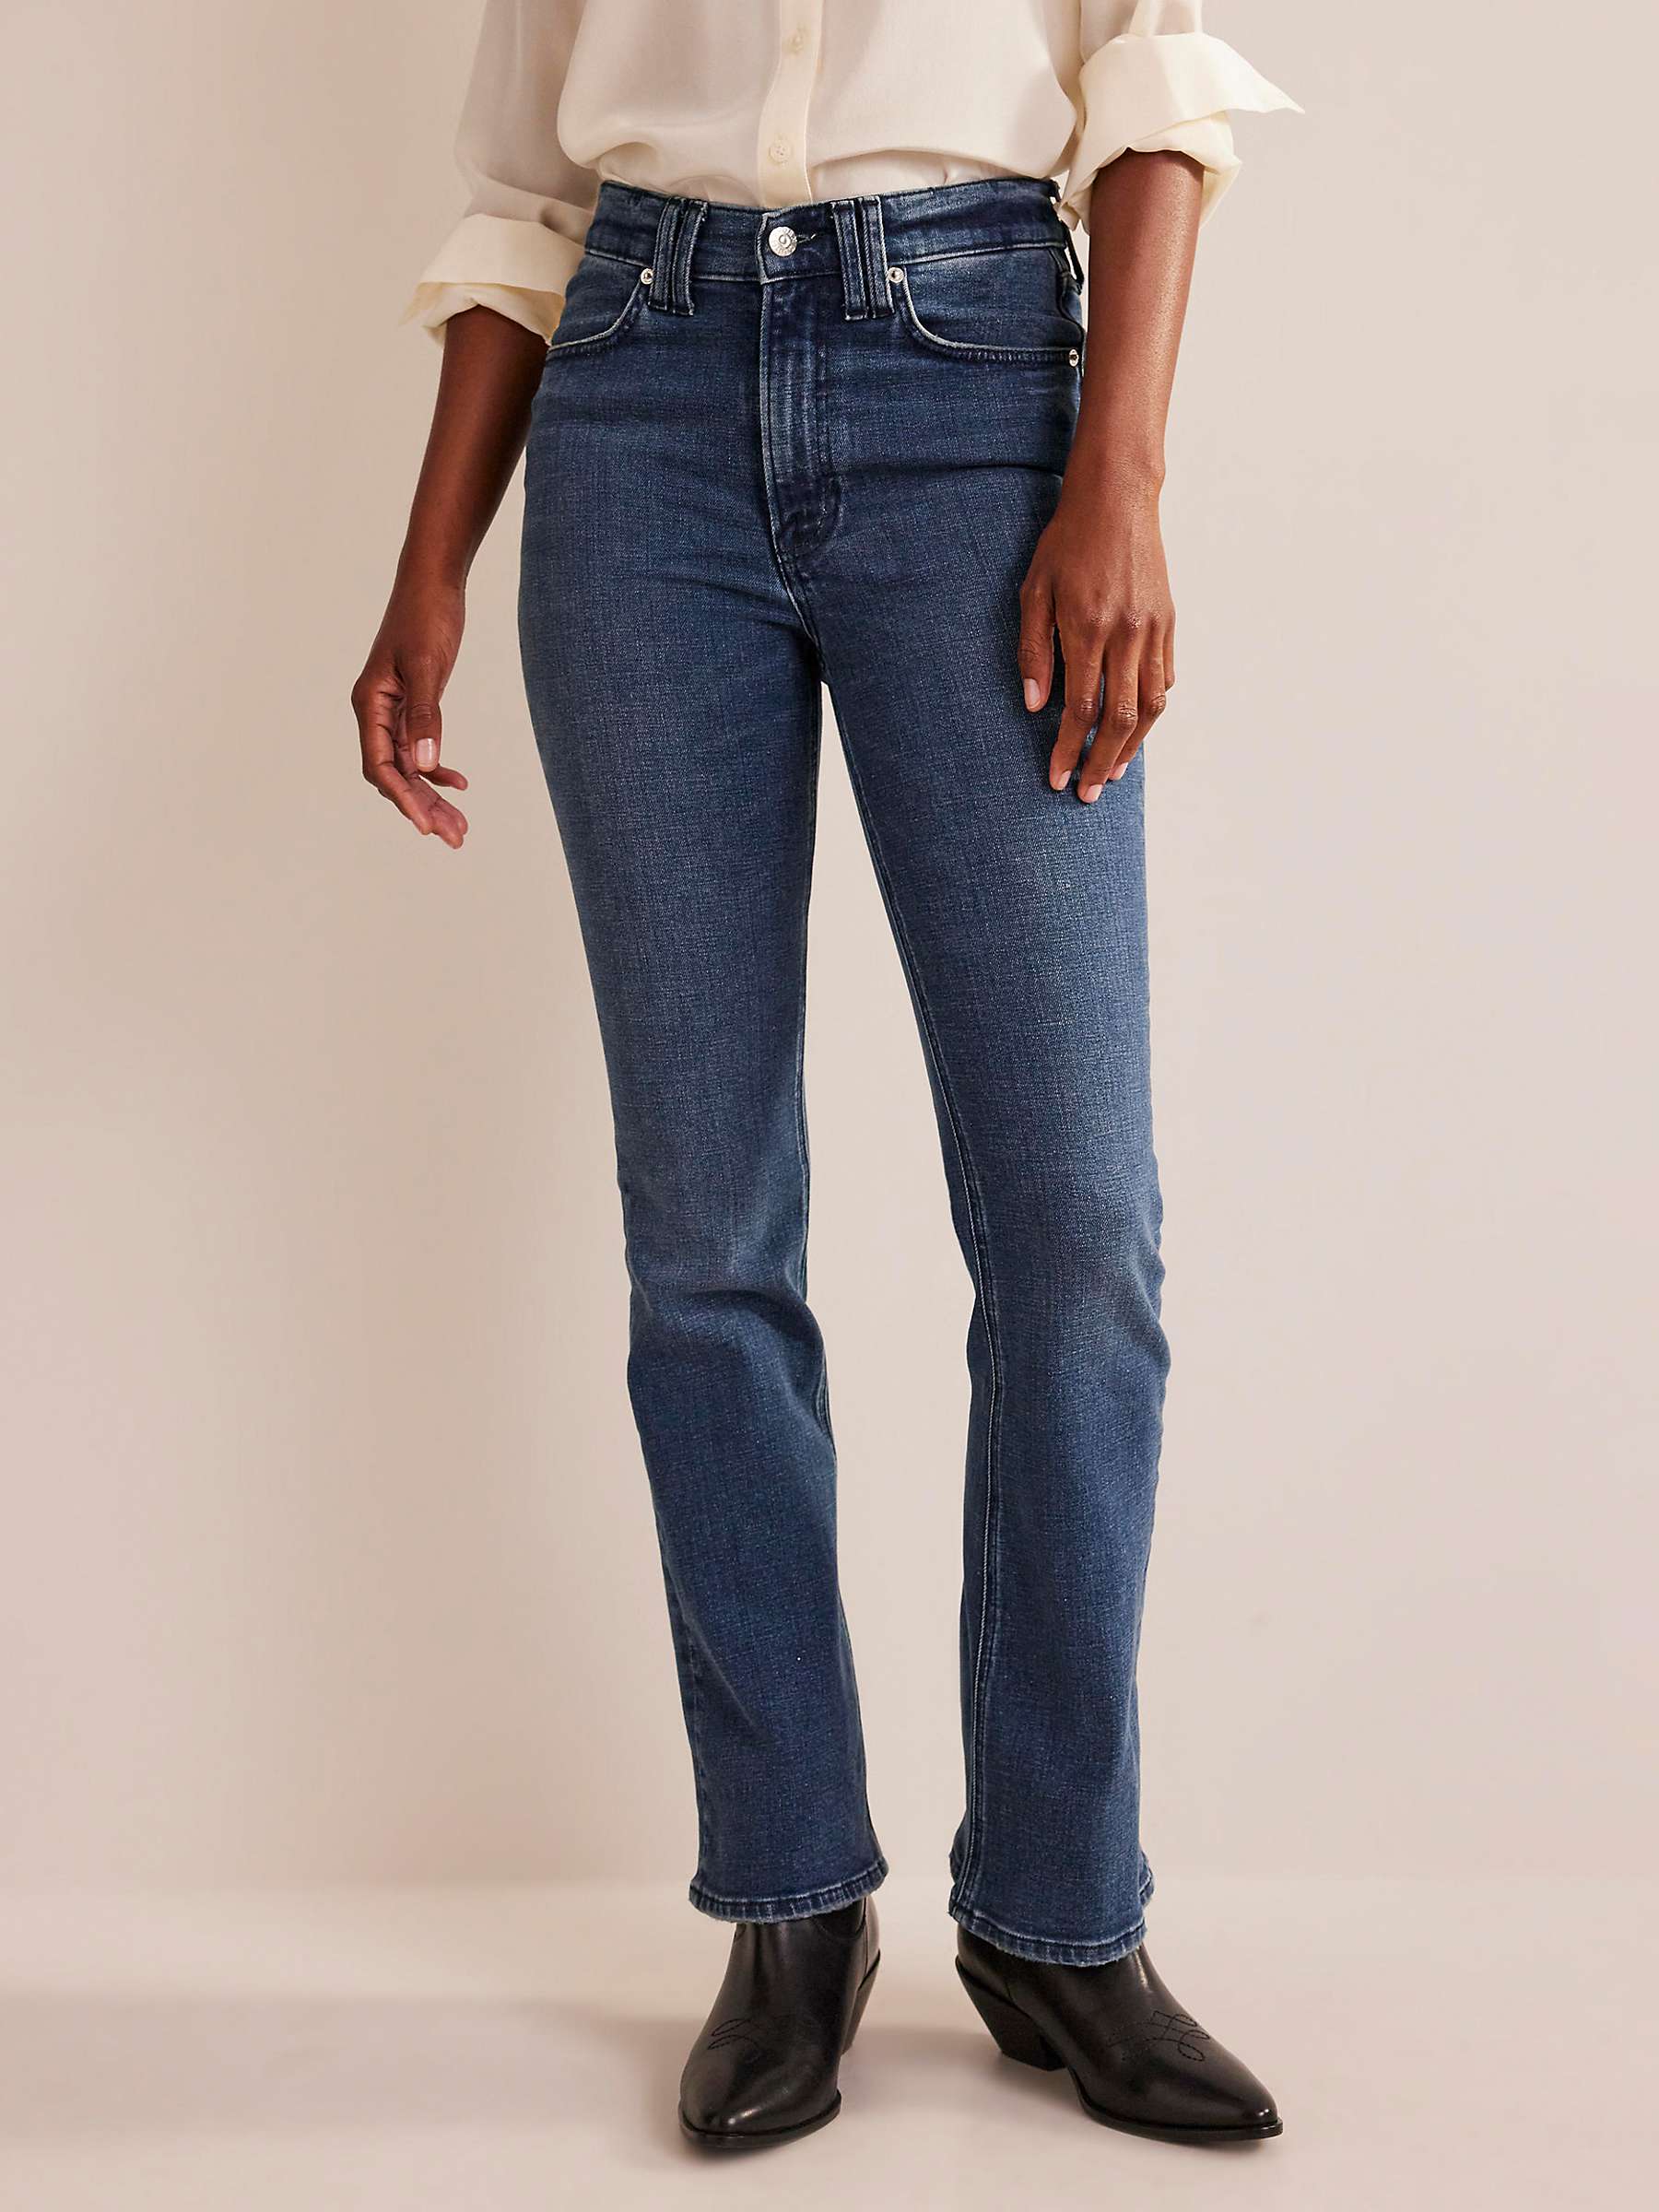 Buy Boden Mid-Rise Slim Flare Jeans, Mid Vintage Online at johnlewis.com